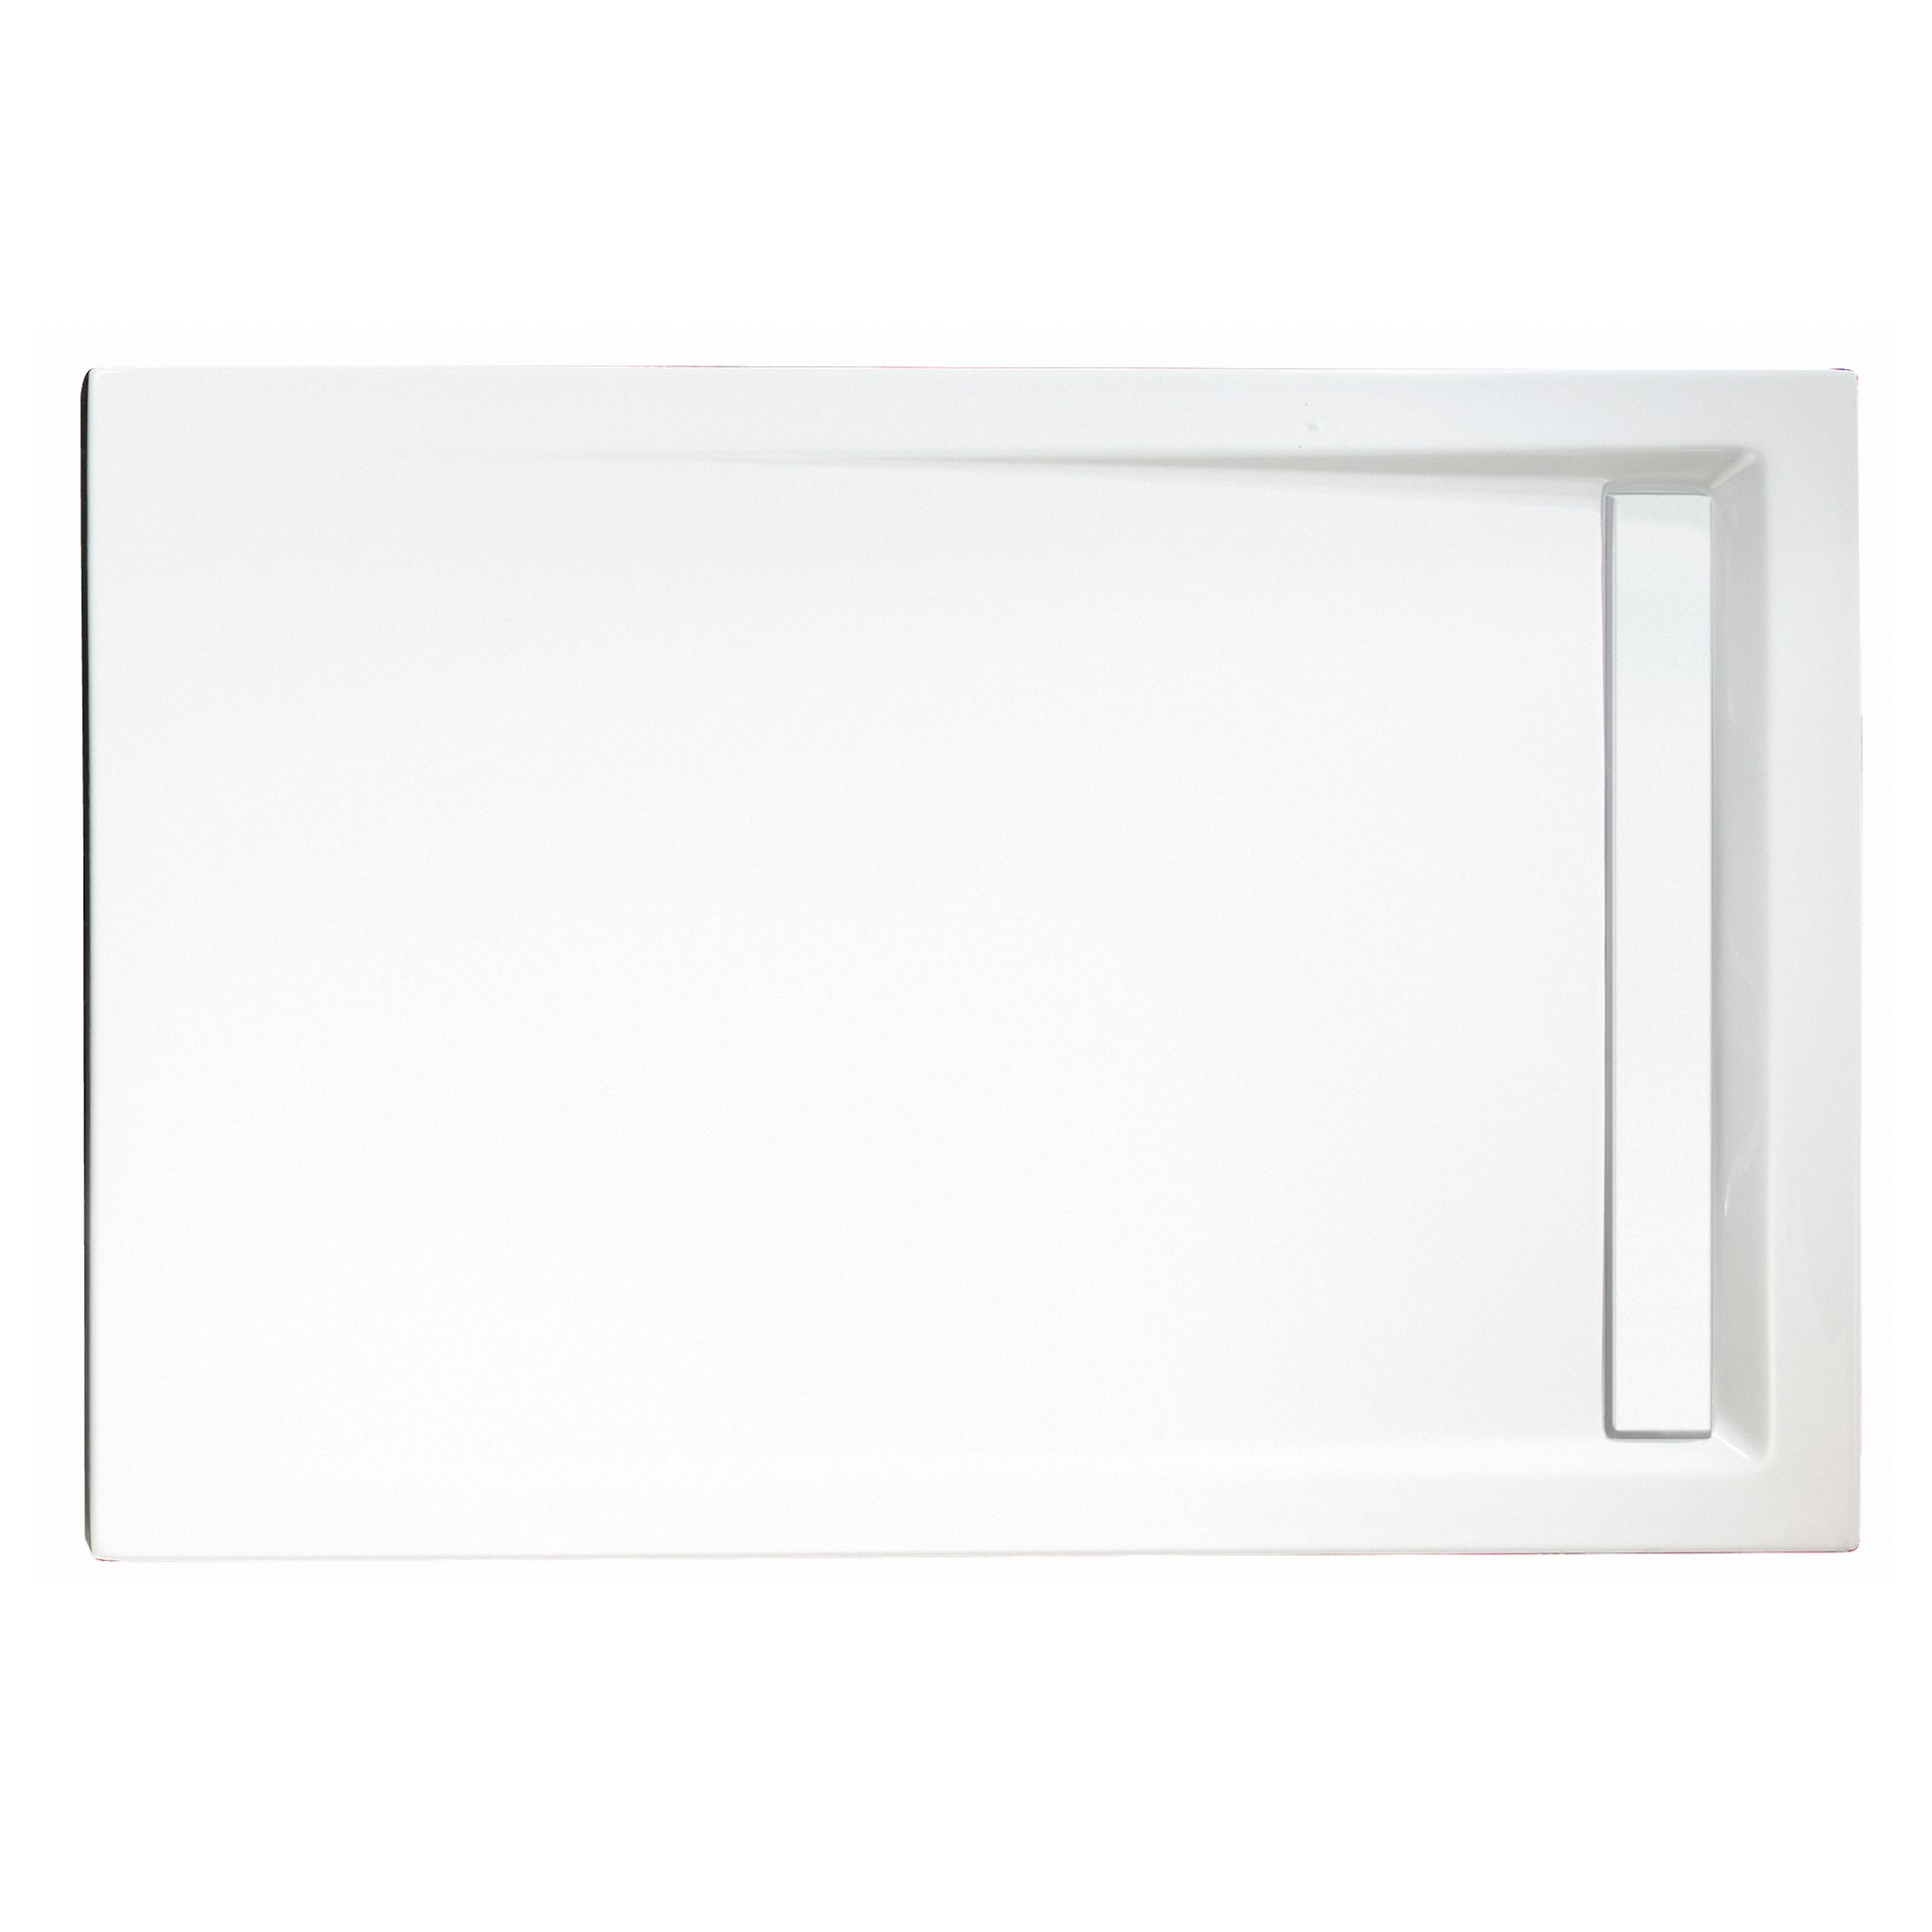 Duschwanne, Sanitäracryl, mit Rinne, weiß, rechteckig, 120 x 80 x 2,5 cm + product picture